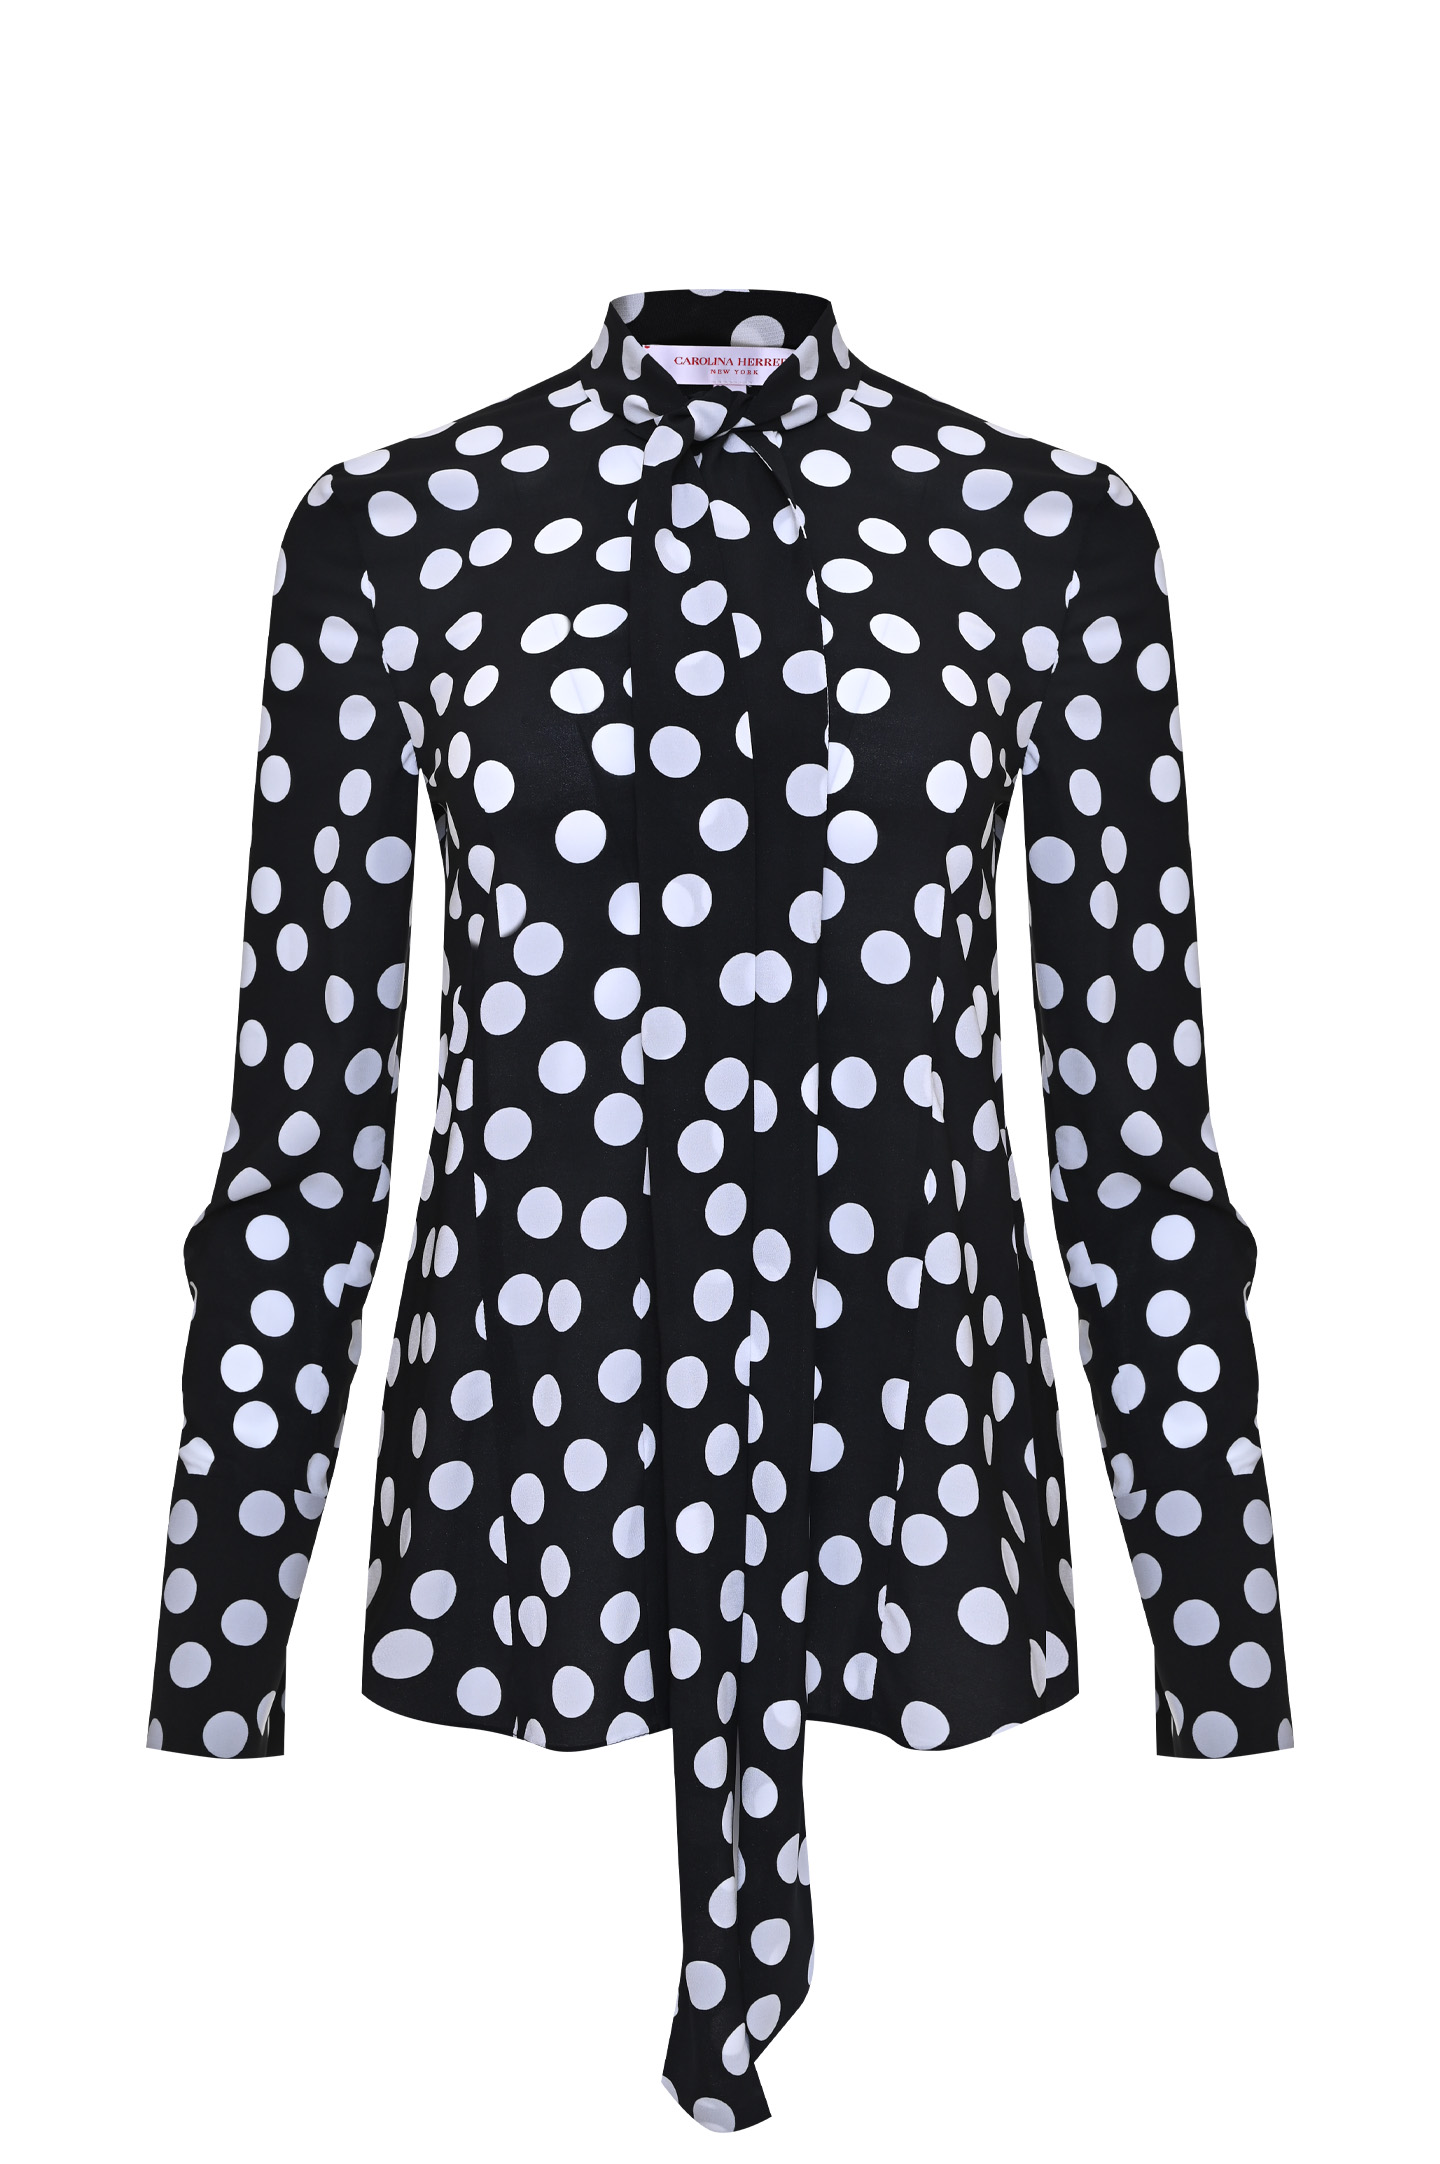 Блуза CAROLINA HERRERA R2111N213, цвет: Черно-белый, Женский